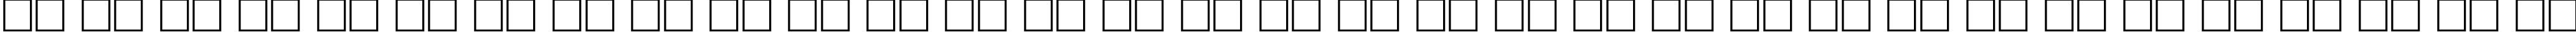 Пример написания русского алфавита шрифтом Europe_Ext Oblique